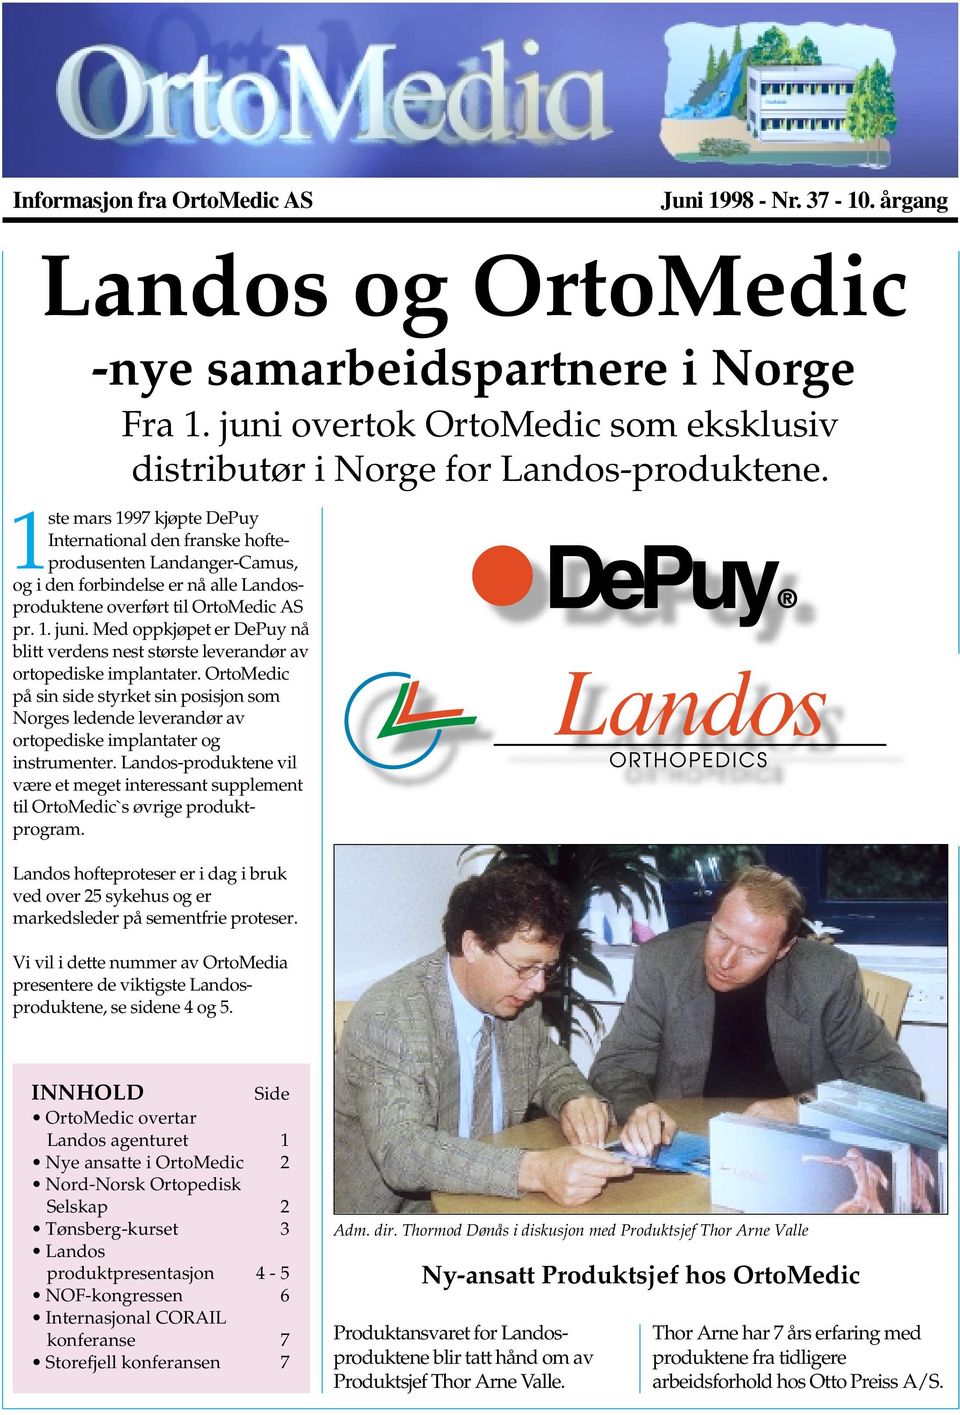 Med oppkjøpet er DePuy nå blitt verdens nest største leverandør av ortopediske implantater.